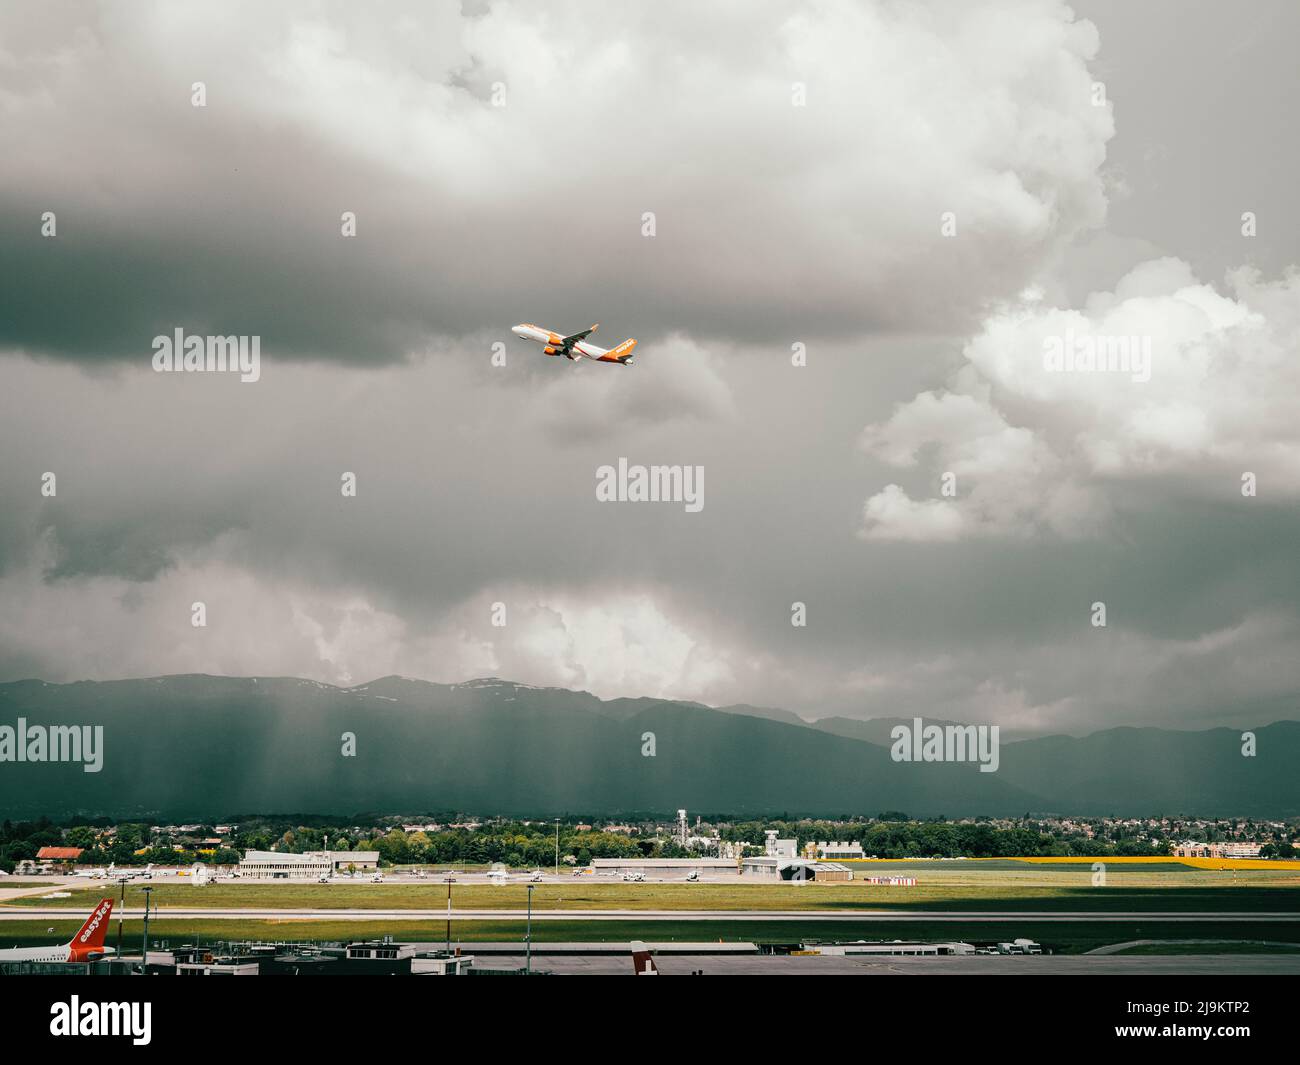 Aeropuerto de Ginebra, Suiza. Aviones y vehículos de servicio se encuentran en la pista de aterrizaje y la autopista de rodaje del aeropuerto de Ginebra en Suiza. Foto de stock